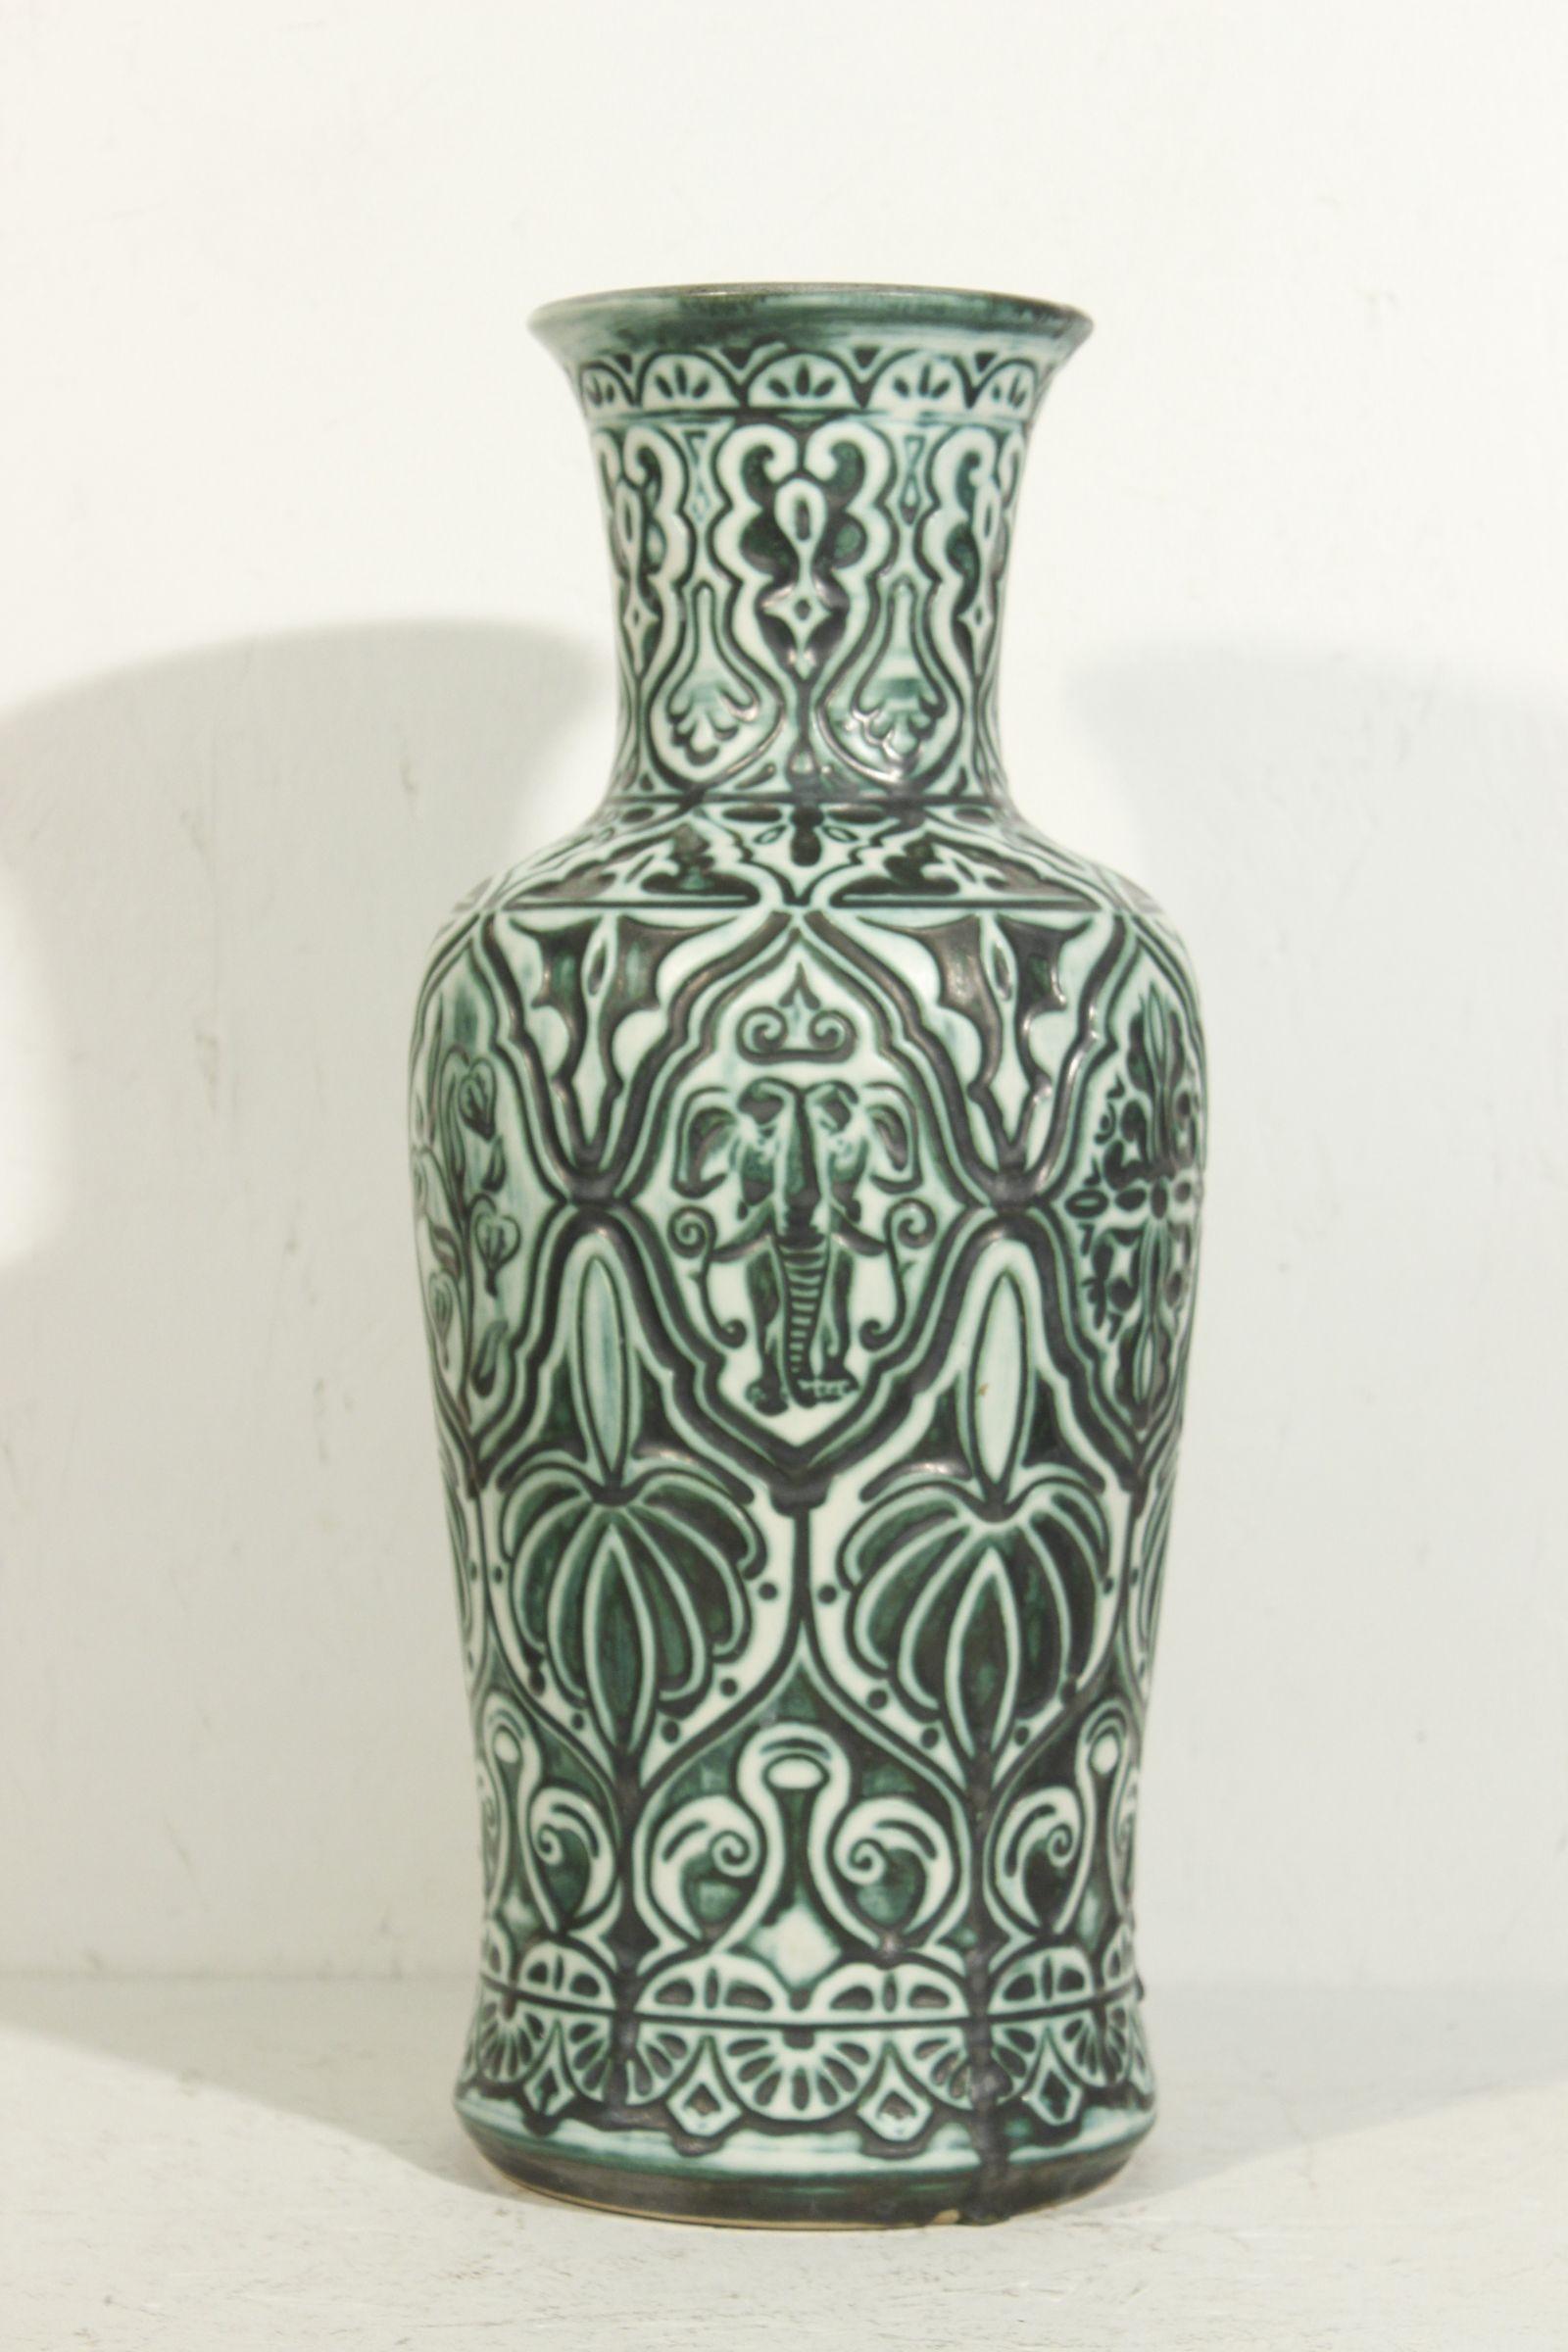 Seltene große Bay Keramik Vase um 1960, Modell Nr. 78 40 

Die Vase hat ein Dekor mit gemischtem orientalischem Einfluss, das auf den Seiten Zeichnungen eines Tigers, eines Elefanten und eines Kamels zeigt. 

In sehr gutem Zustand, ein kleiner Chip